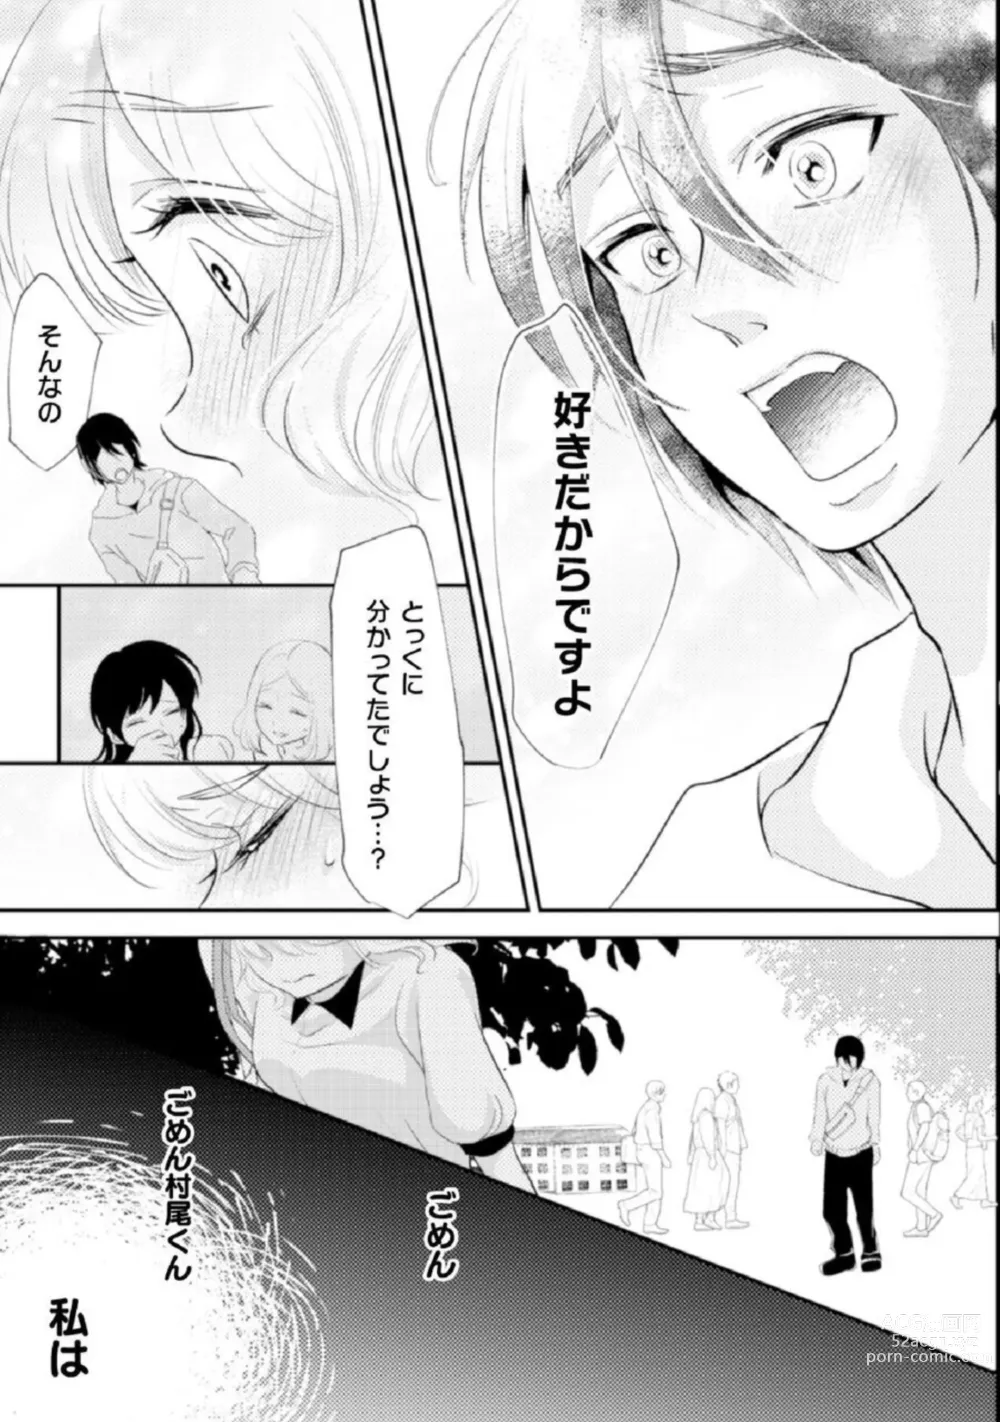 Page 20 of manga Shokorashukureansorojī Ibitsuai ～ Yandere Kareshi no Omoi ai ni Kakowarete ～Vol.2